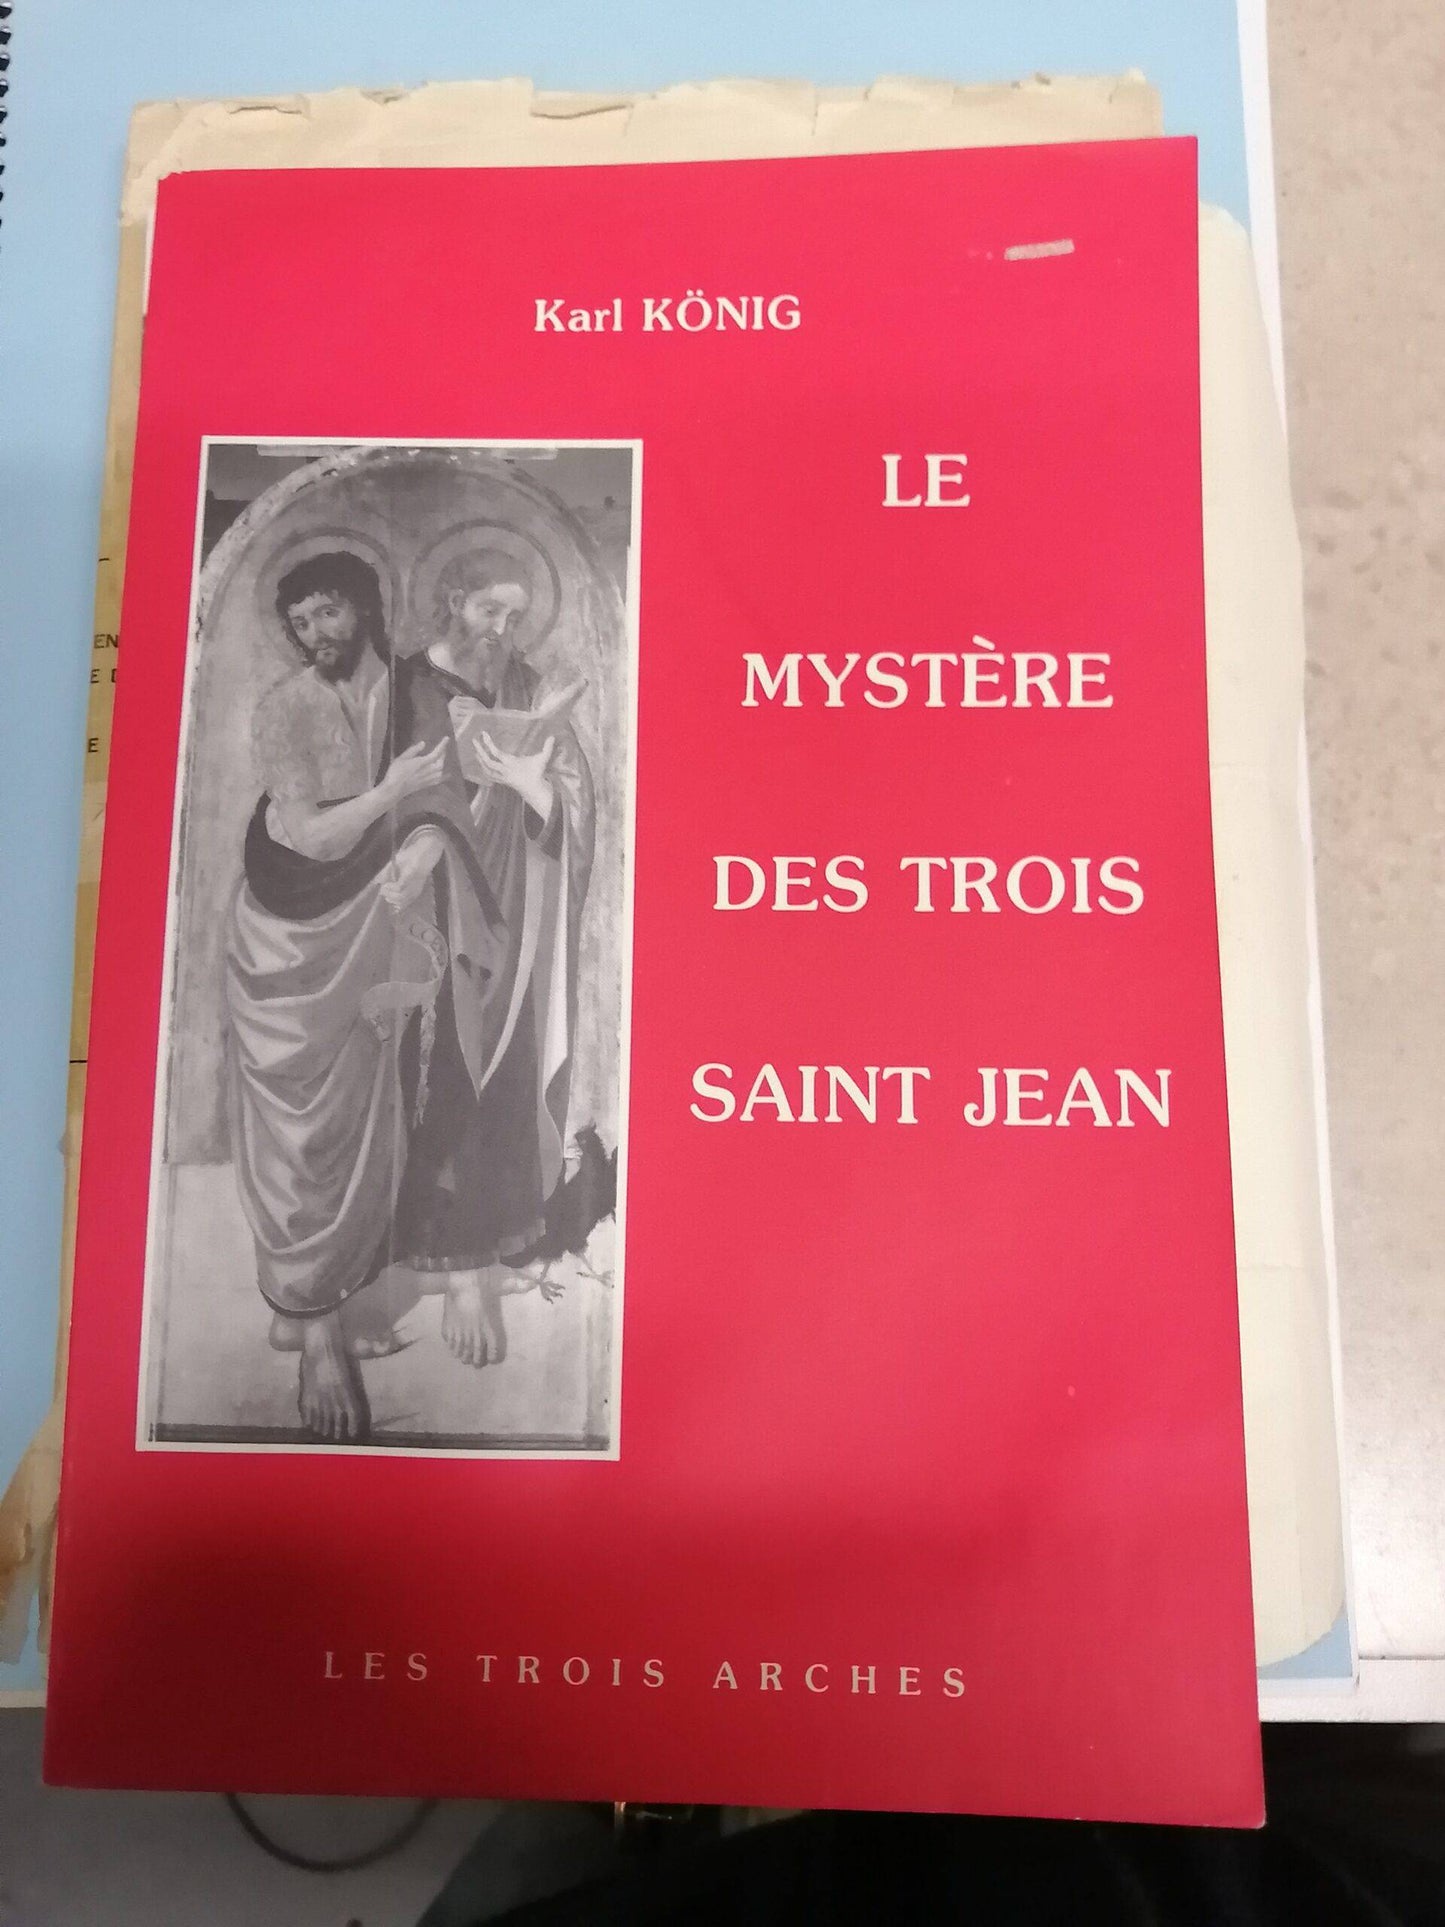 Mystère des Trois ST Jean, Konig, Karl, Les trois arches, 83 p,